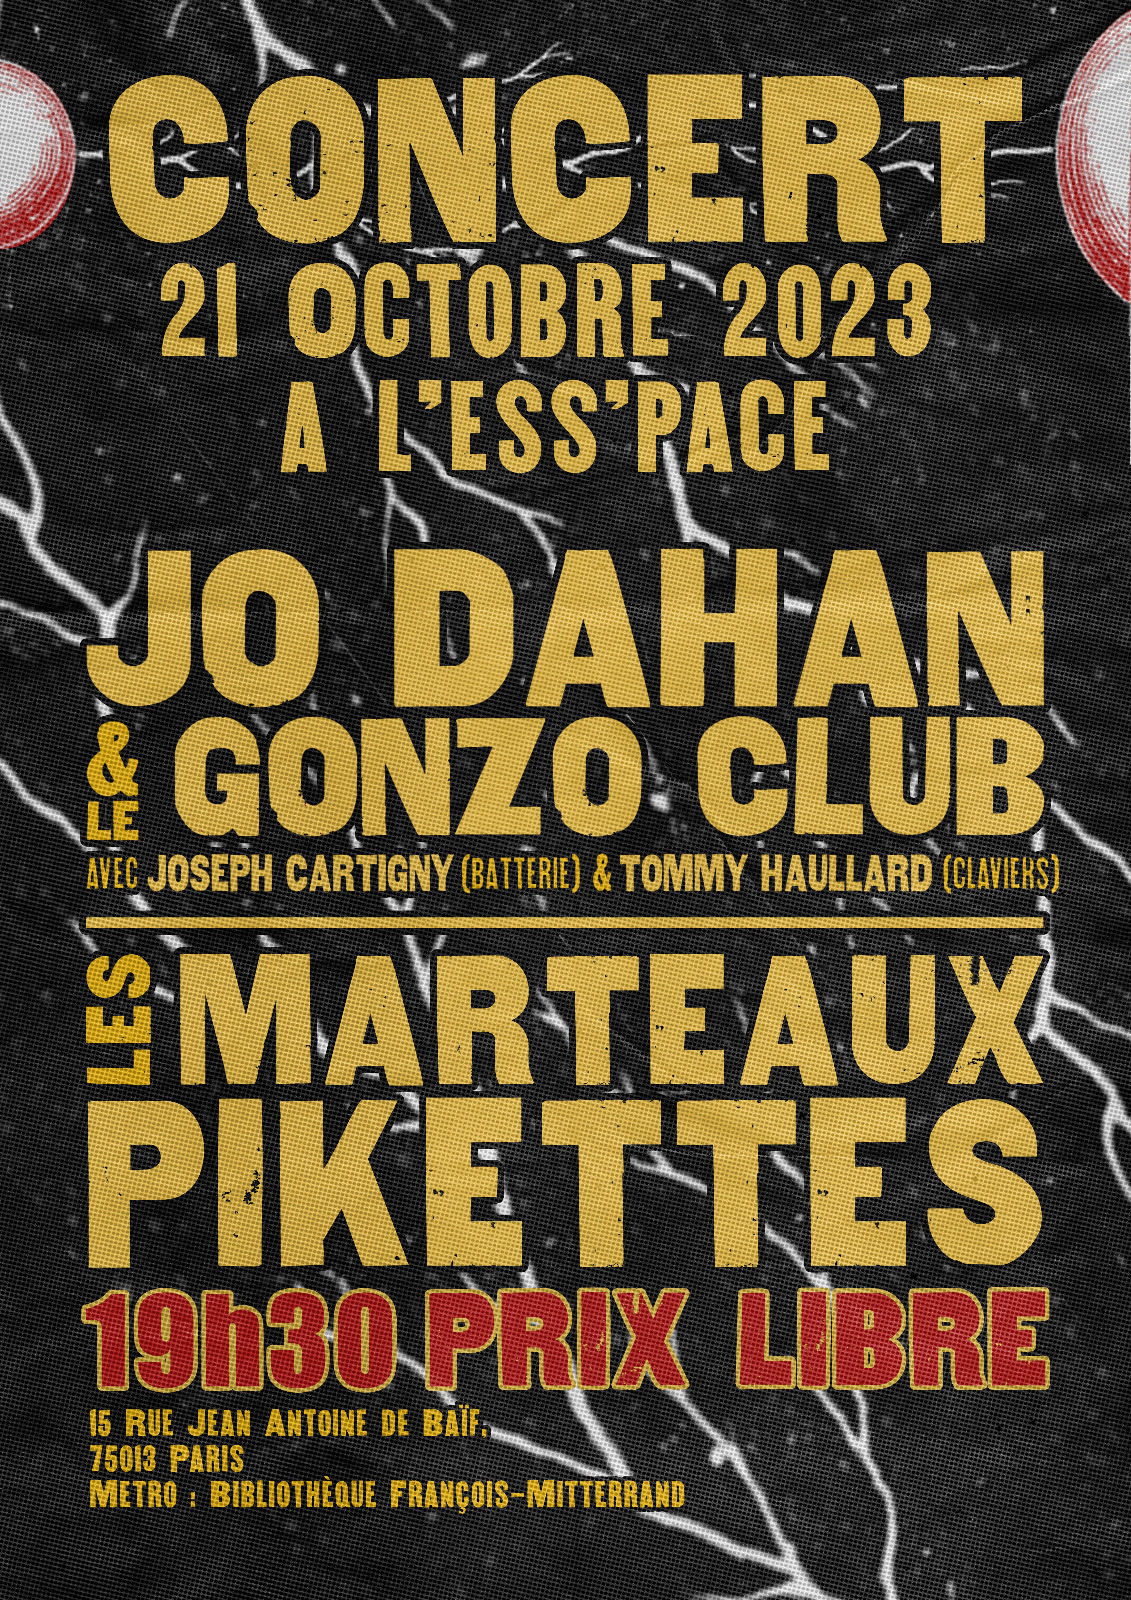 Les Marteaux Pikettes - Concert 21 octobre 2023